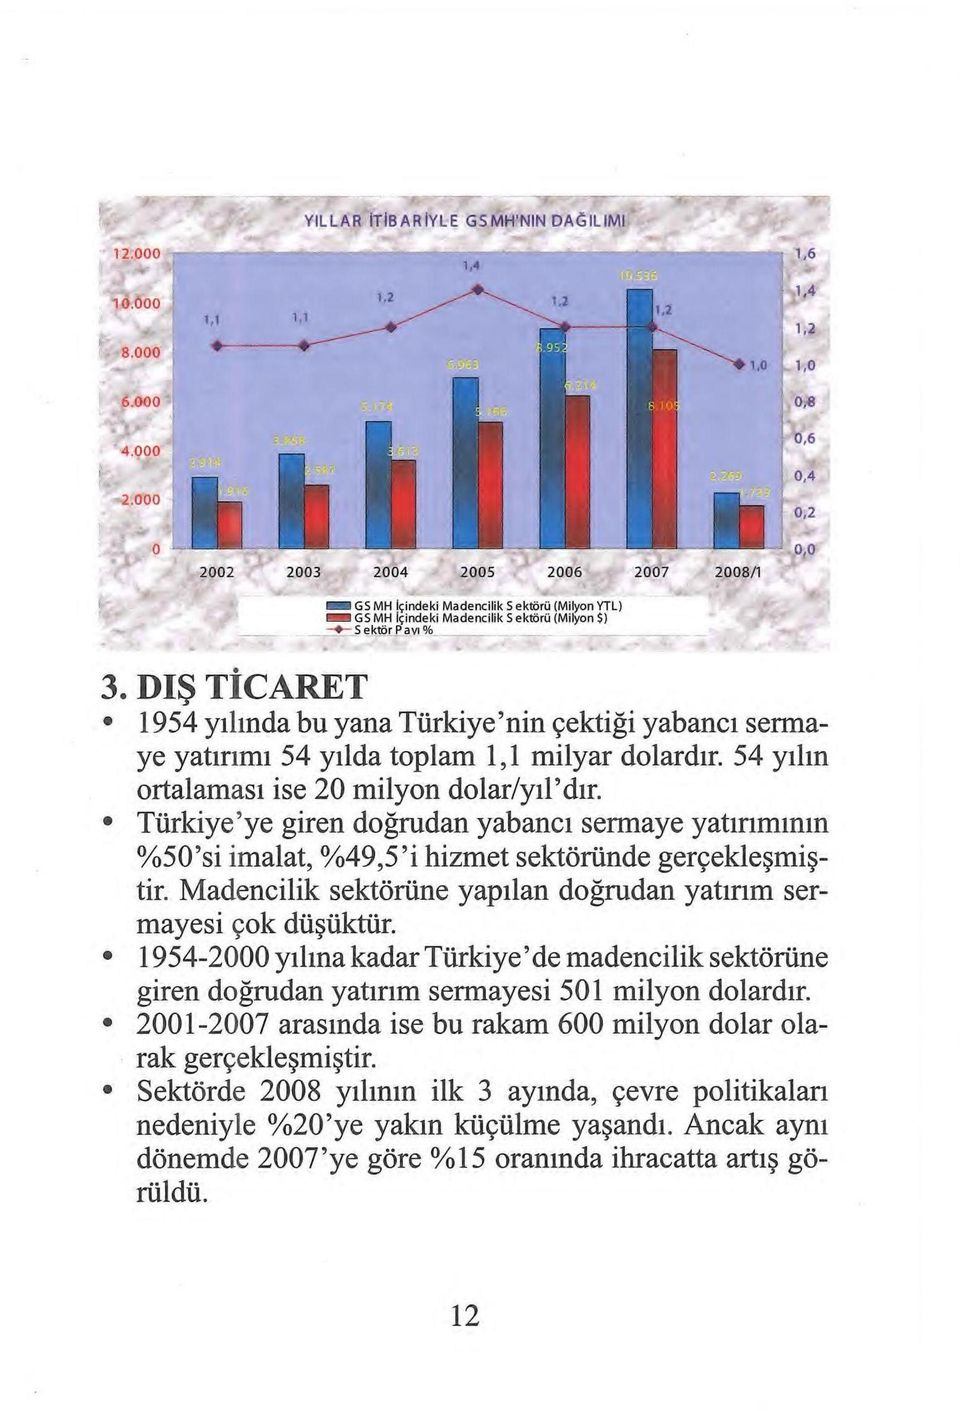 Türkiye'ye giren doğrudan yabancı sermaye yatınmmm %50'si imalat, %49,5'i hizmet sektöründe gerçekleşmiştir. Madencilik sektörüne yapılan doğrudan yatırım sermayesi çok düşüktür.